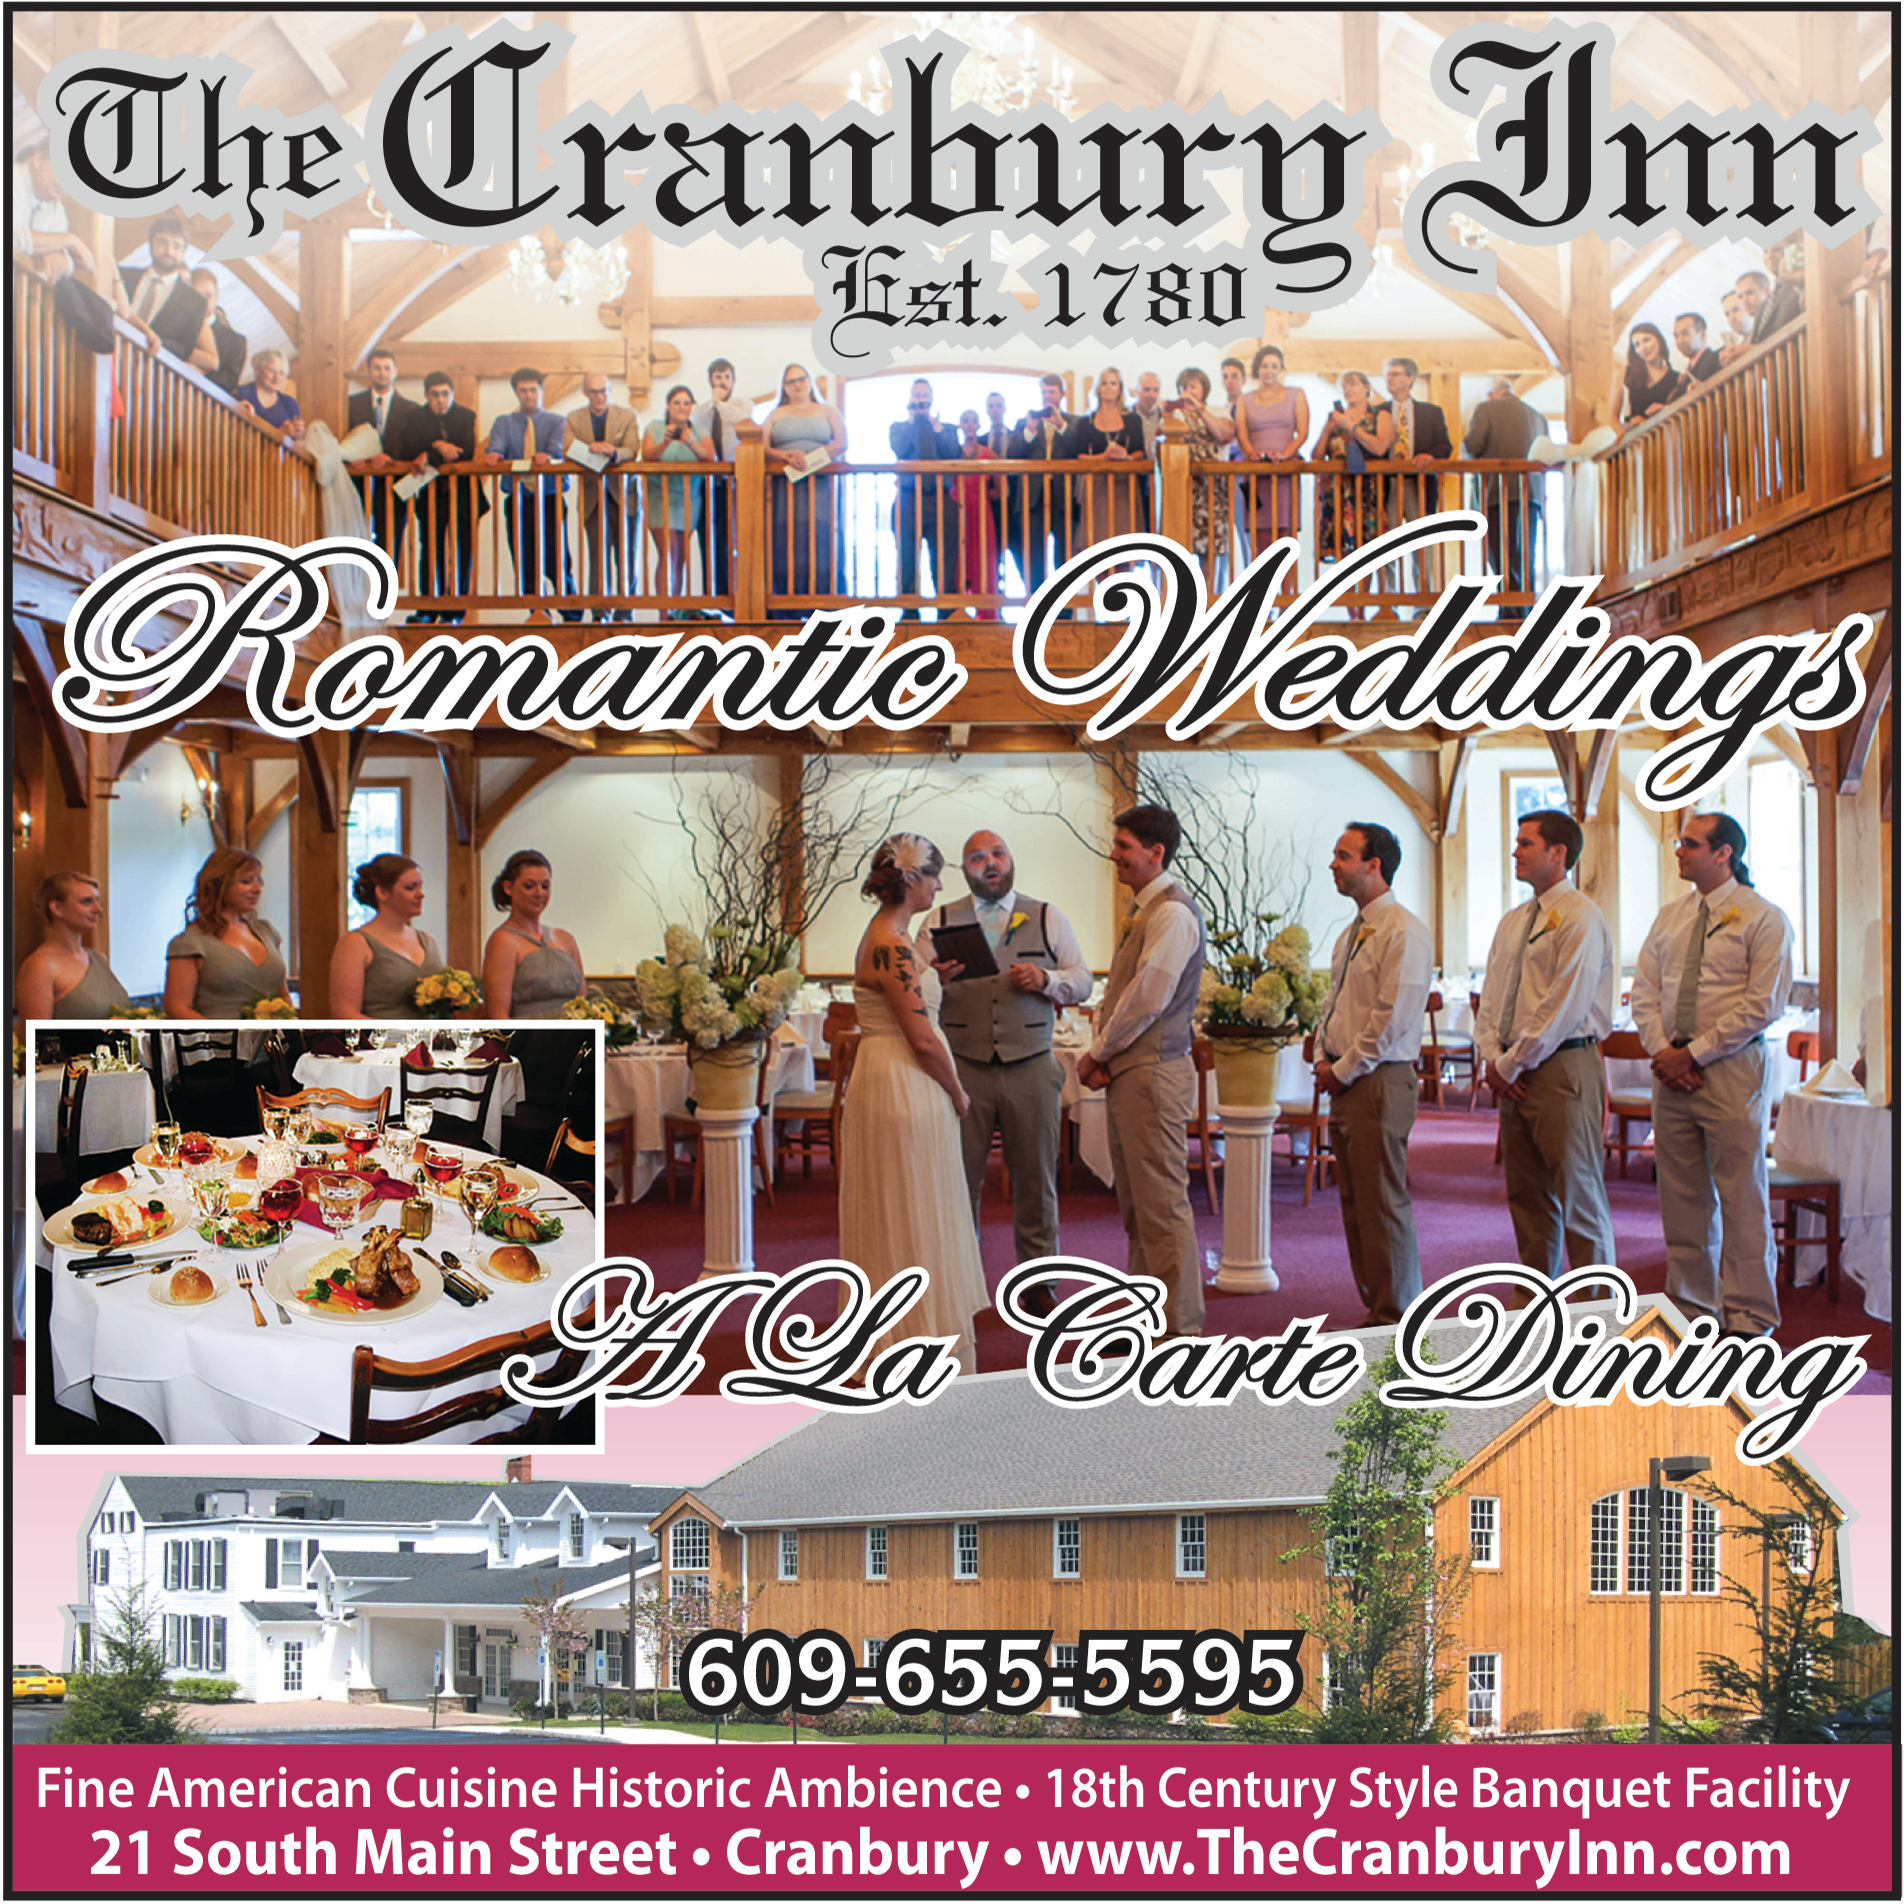 The Cranbury Inn Restaurant & Banquet Facility Print Ad